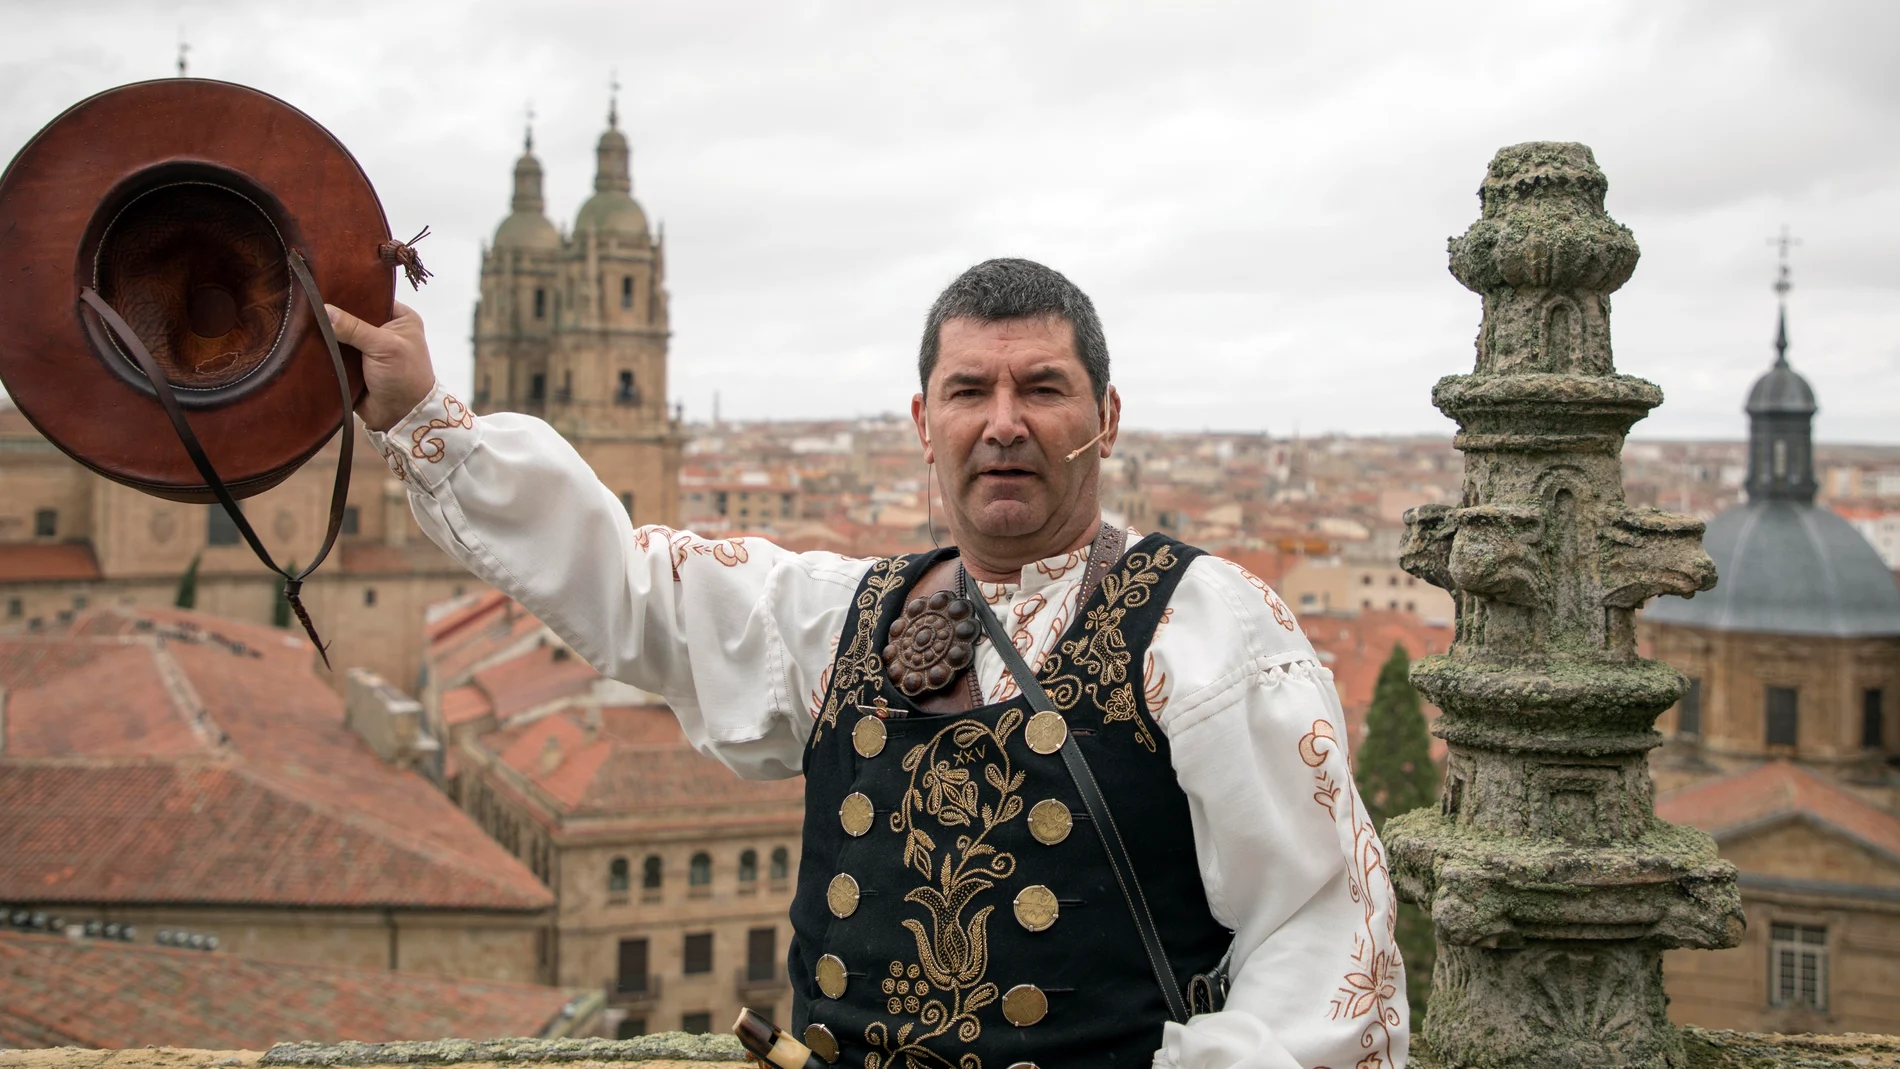 El folclorista salmantino Ángel Rufino de Haro, "El Mariquelo", realiza la XXXV edición de su tradicional ascensión a la torre de la Catedral de Salamanca